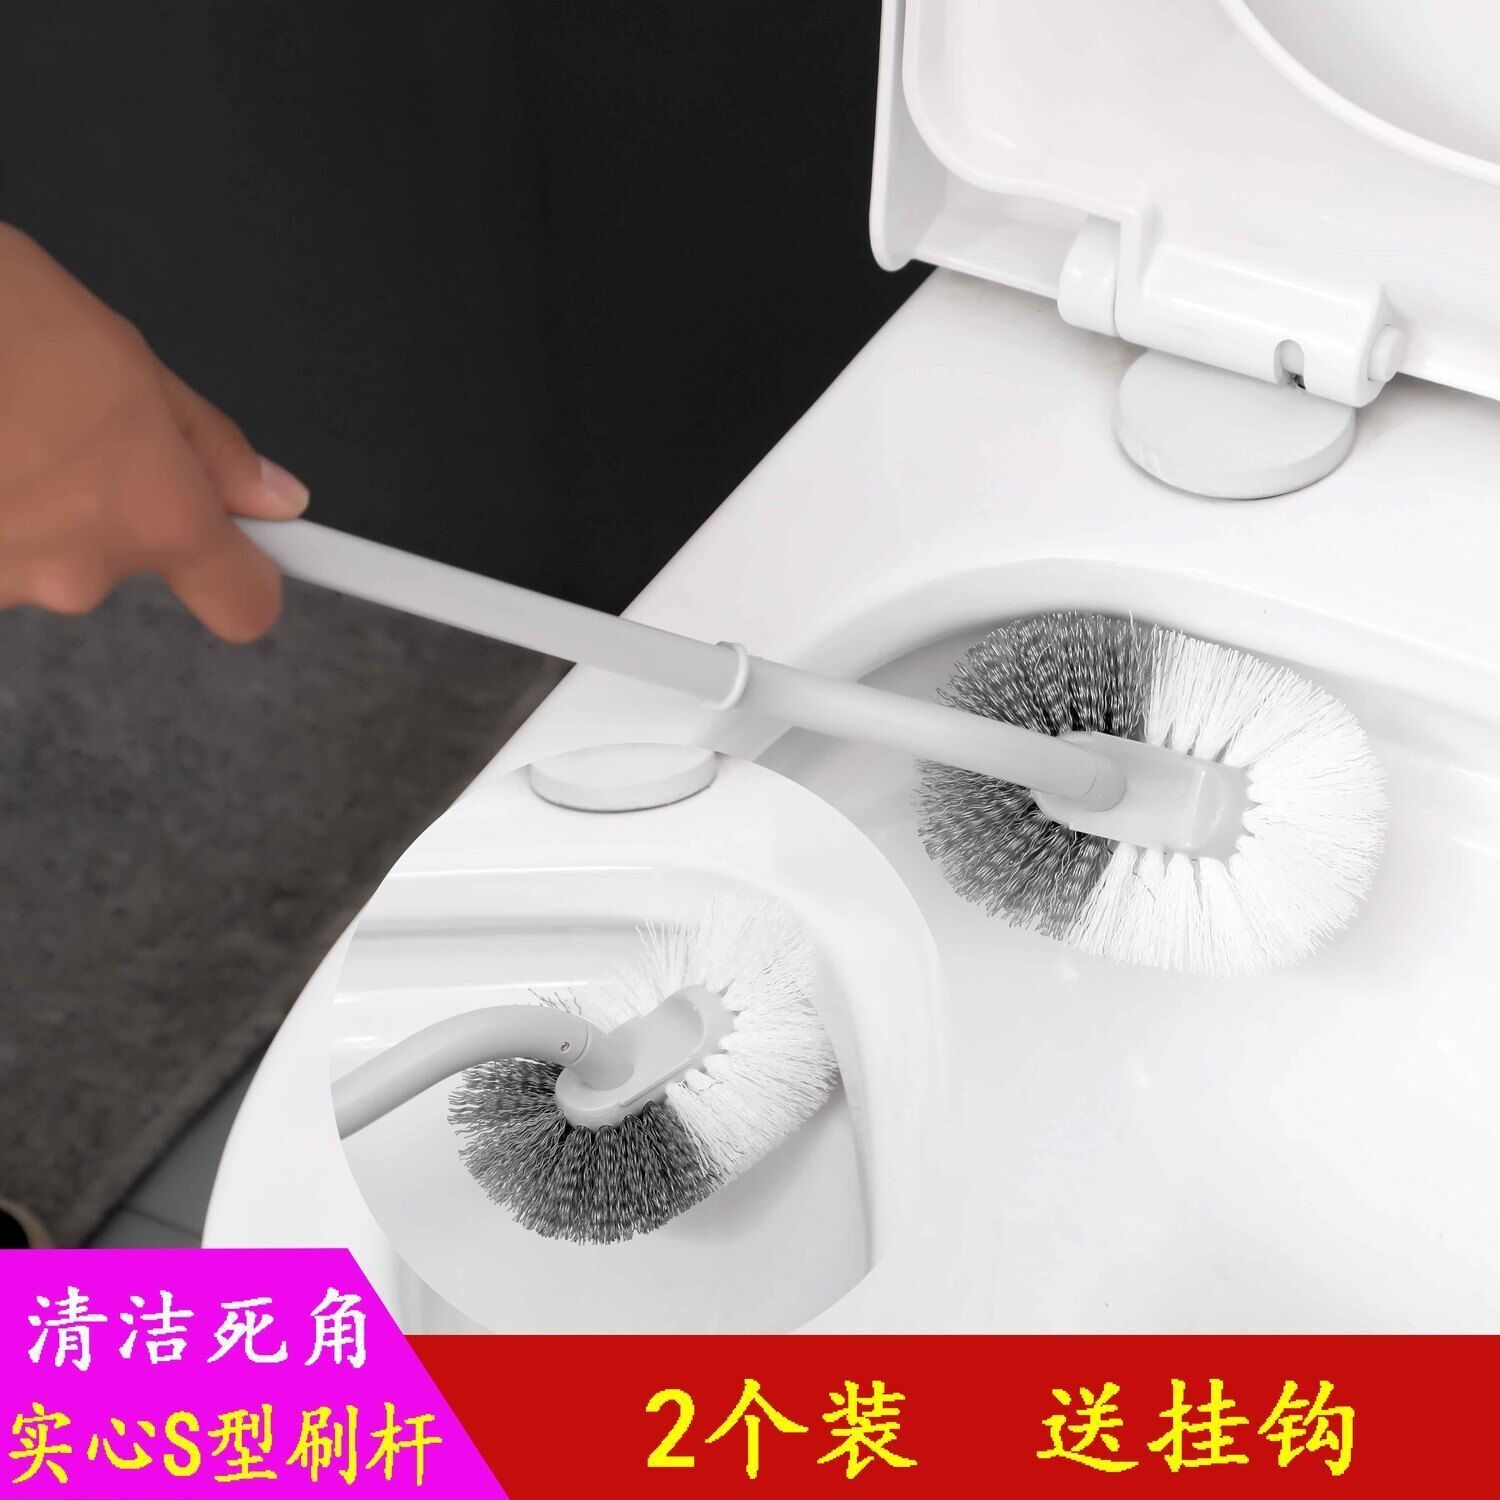 【马桶刷】日式高品质双面长柄去死角刷厕所马桶刷马桶刷厕所刷子